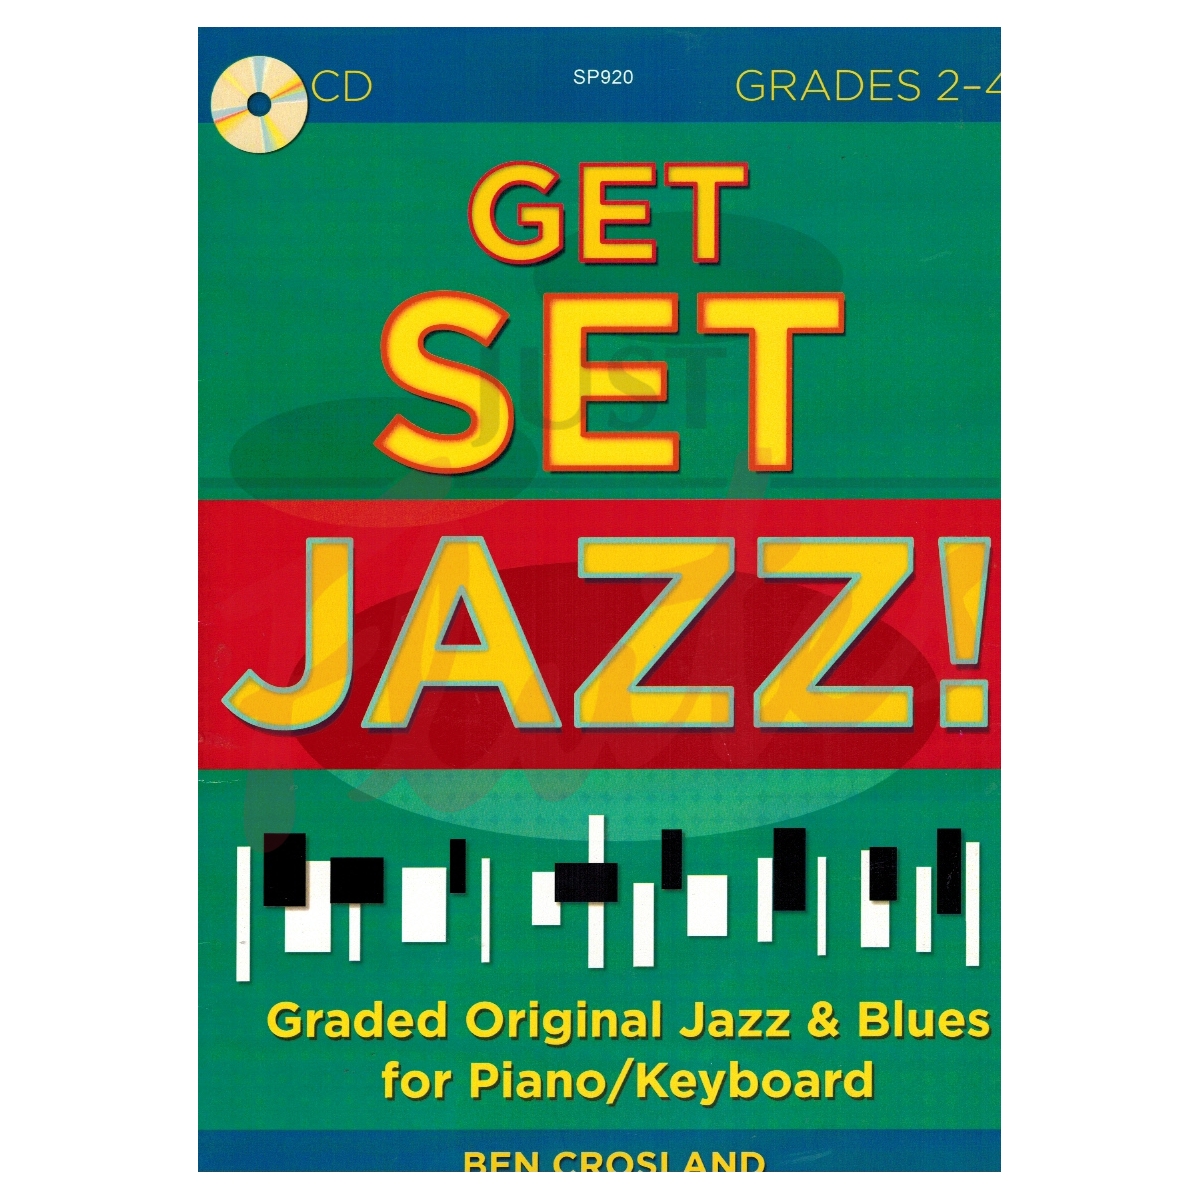 Get Set Jazz! Grades 2-4